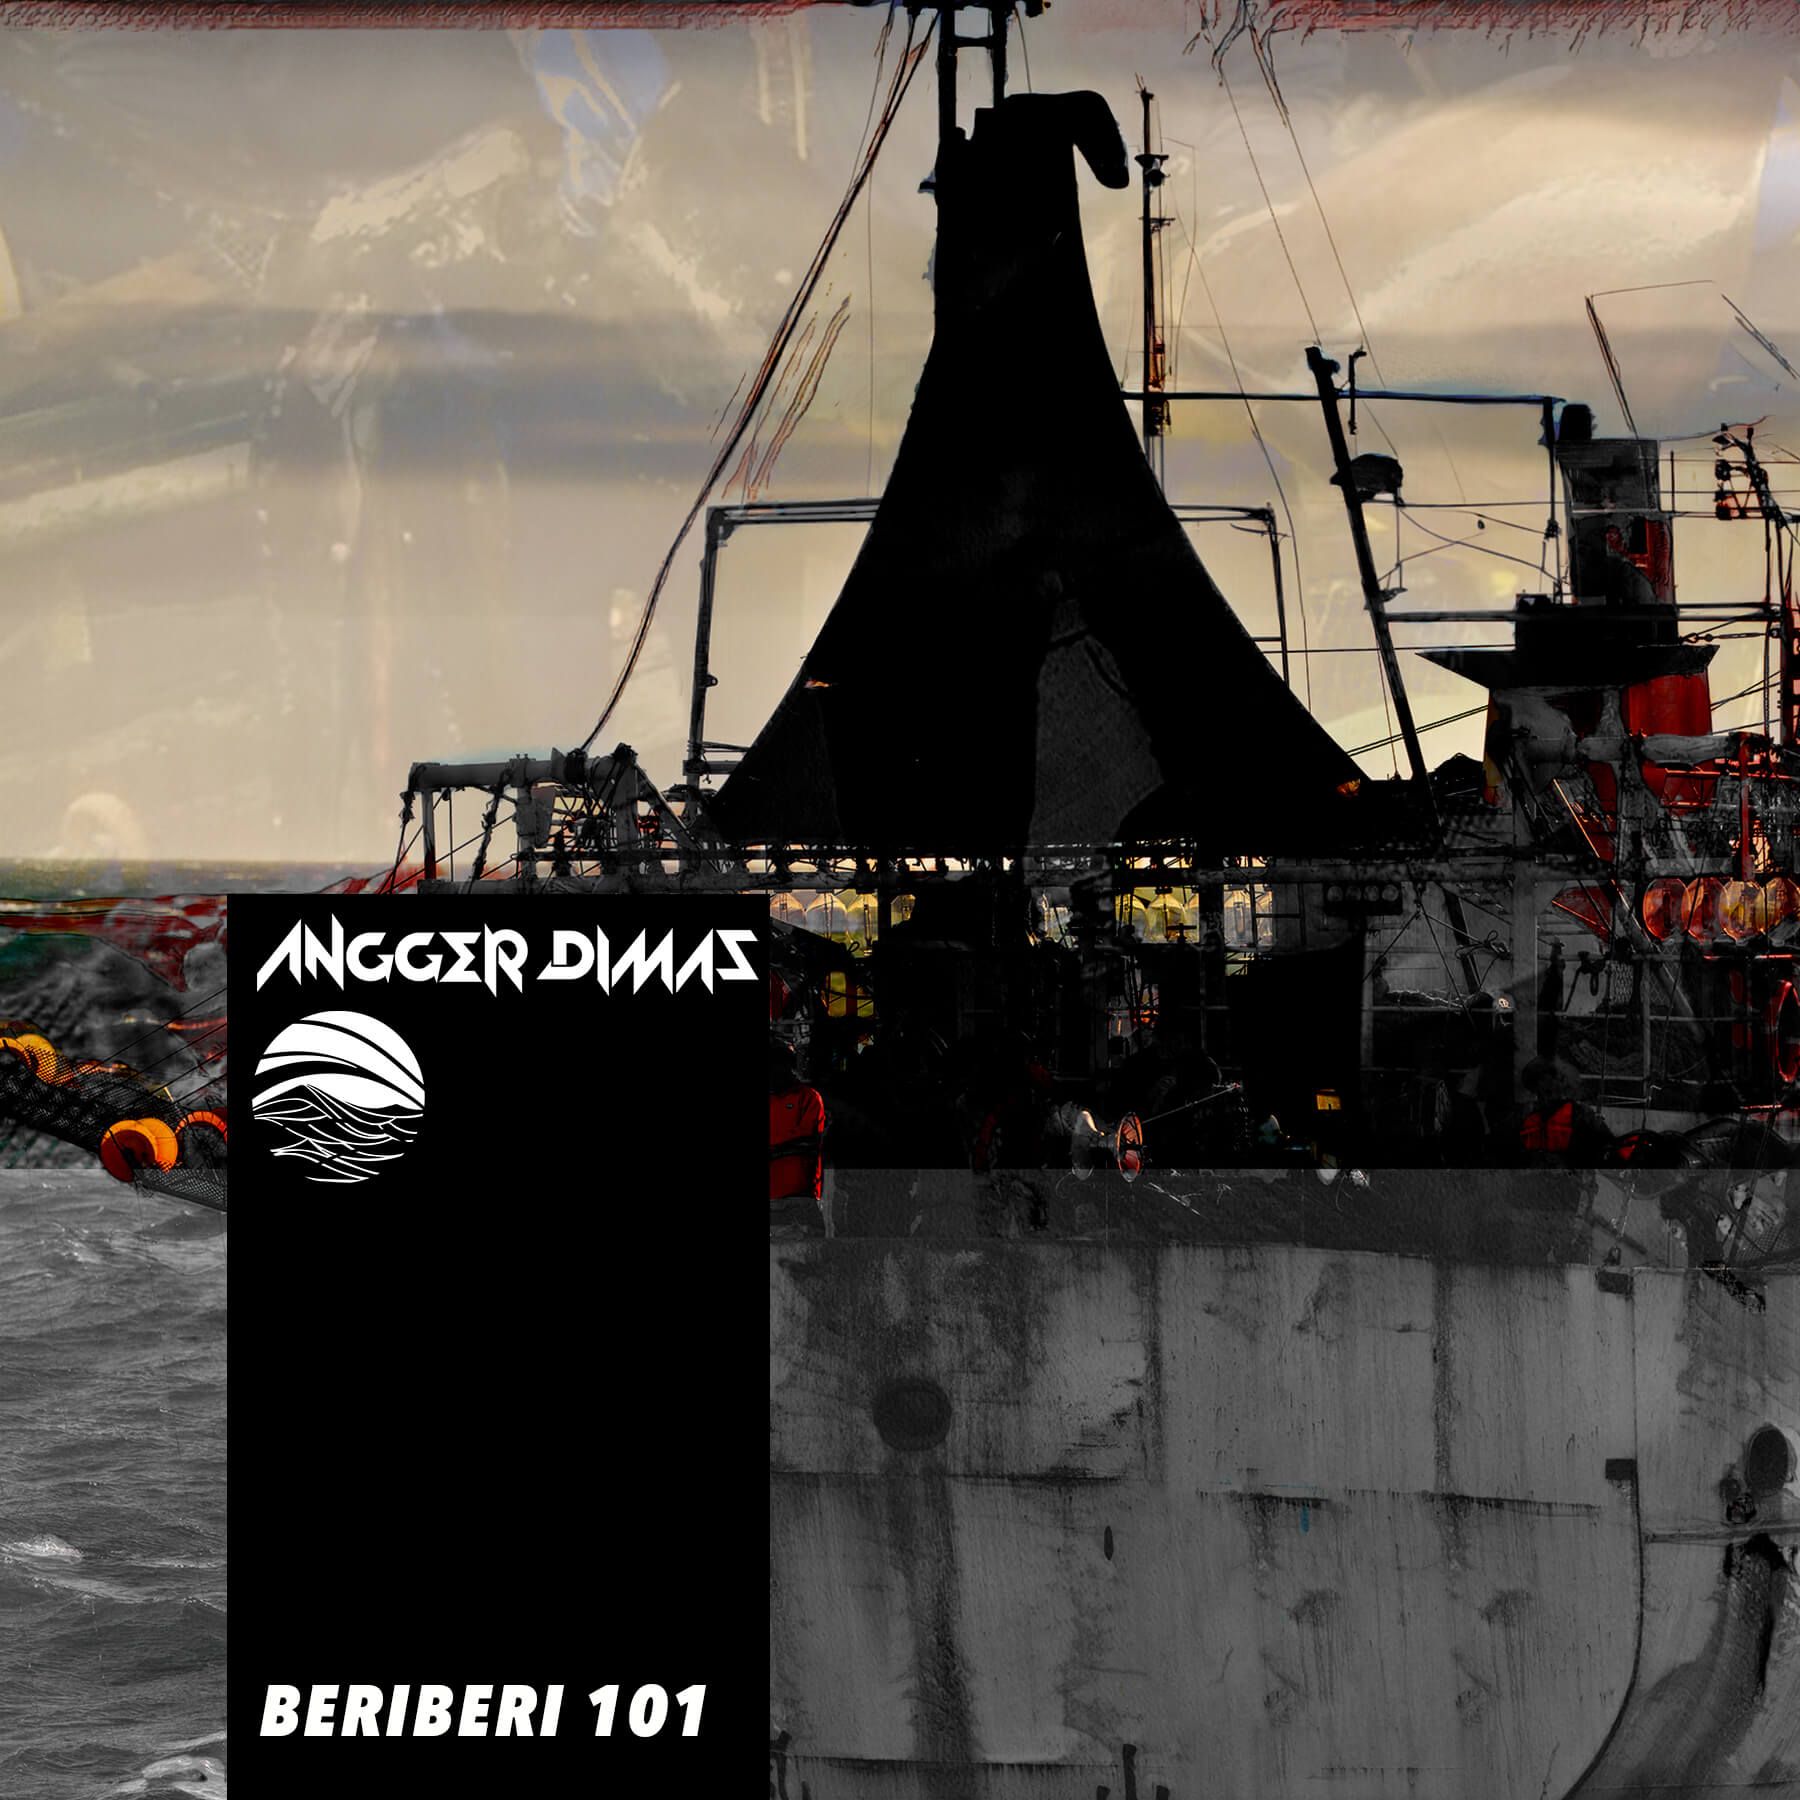 Beriberi 101 by Angger Dimas